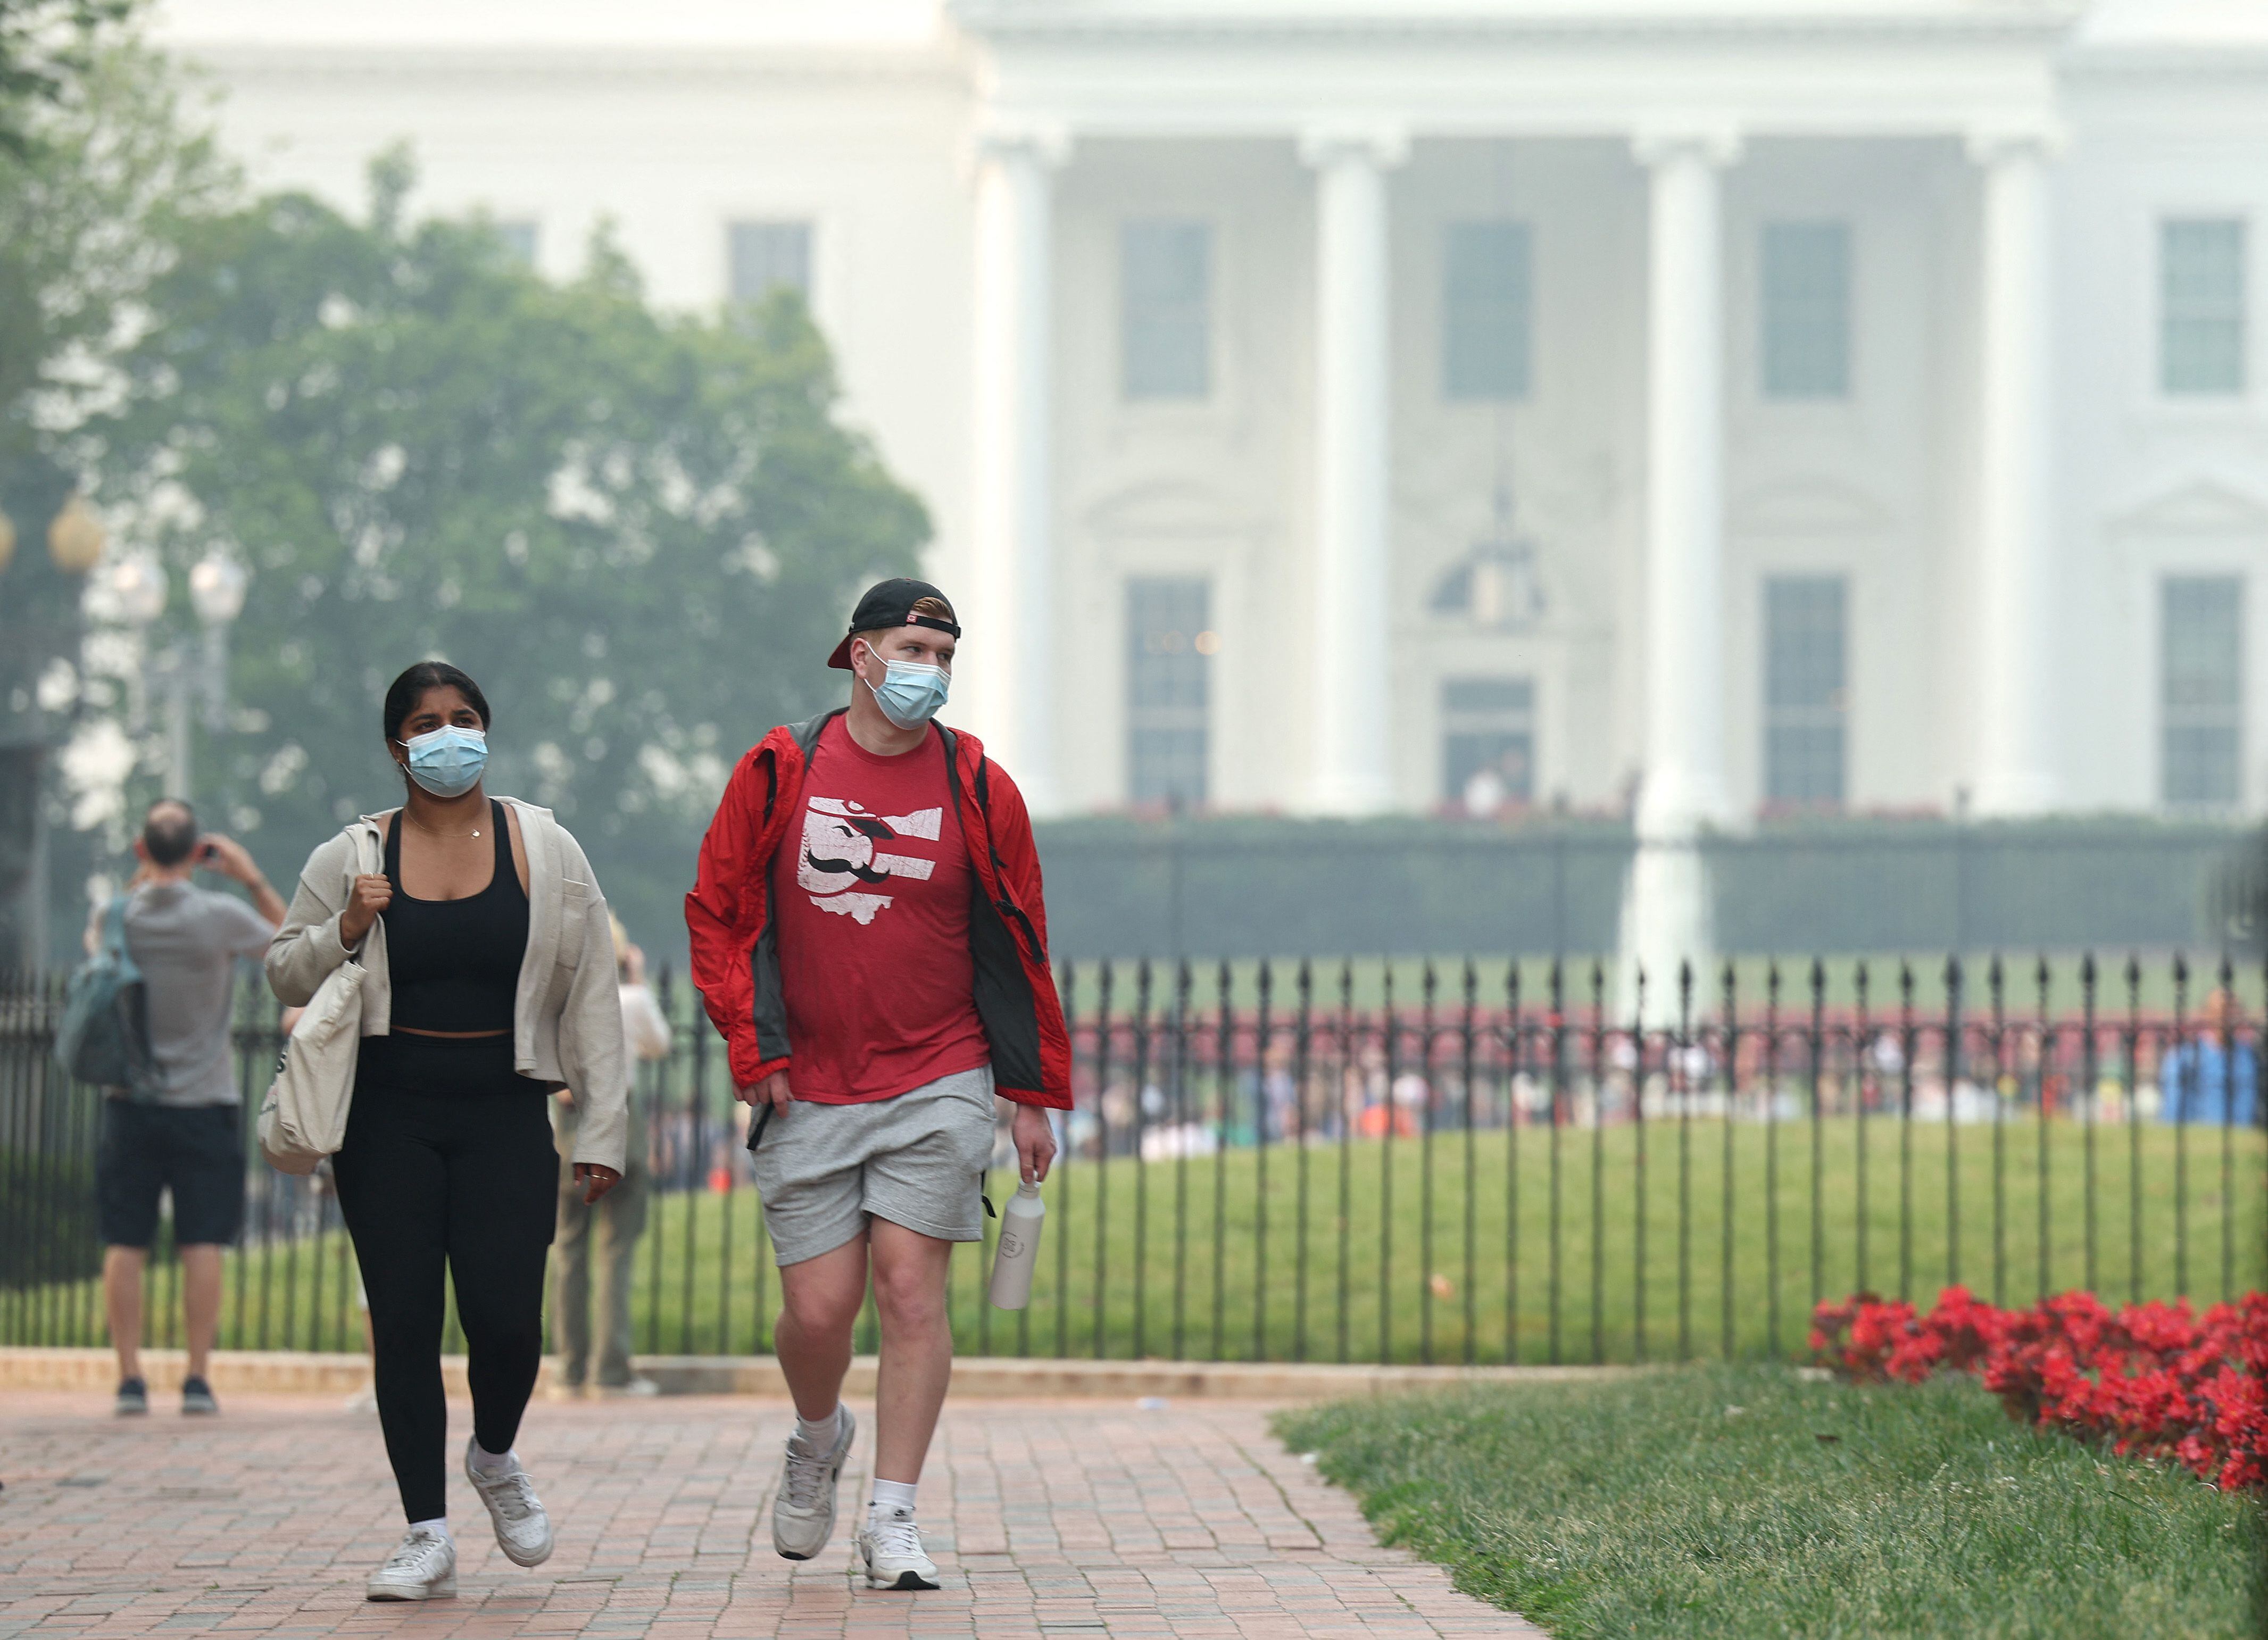 Las personas continúan usando máscaras debido al humo de los incendios forestales de Canadá que ha afectado a ciudades como Nueva York y Washington.